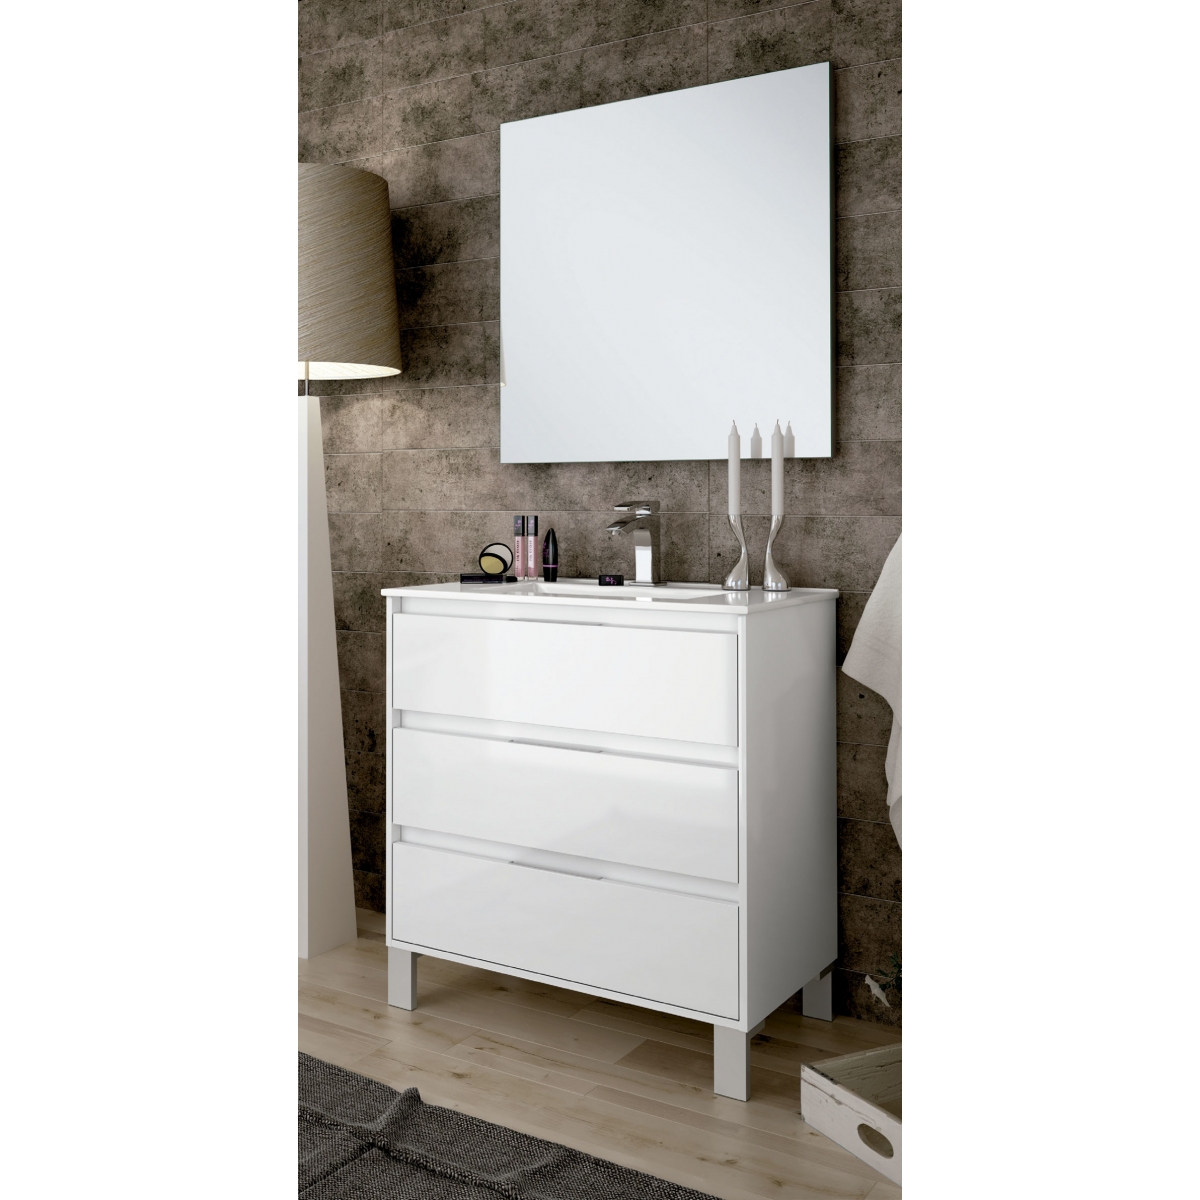 Mueble de baño Bolton de 100 cm de ancho color blanco con lavabo integrado